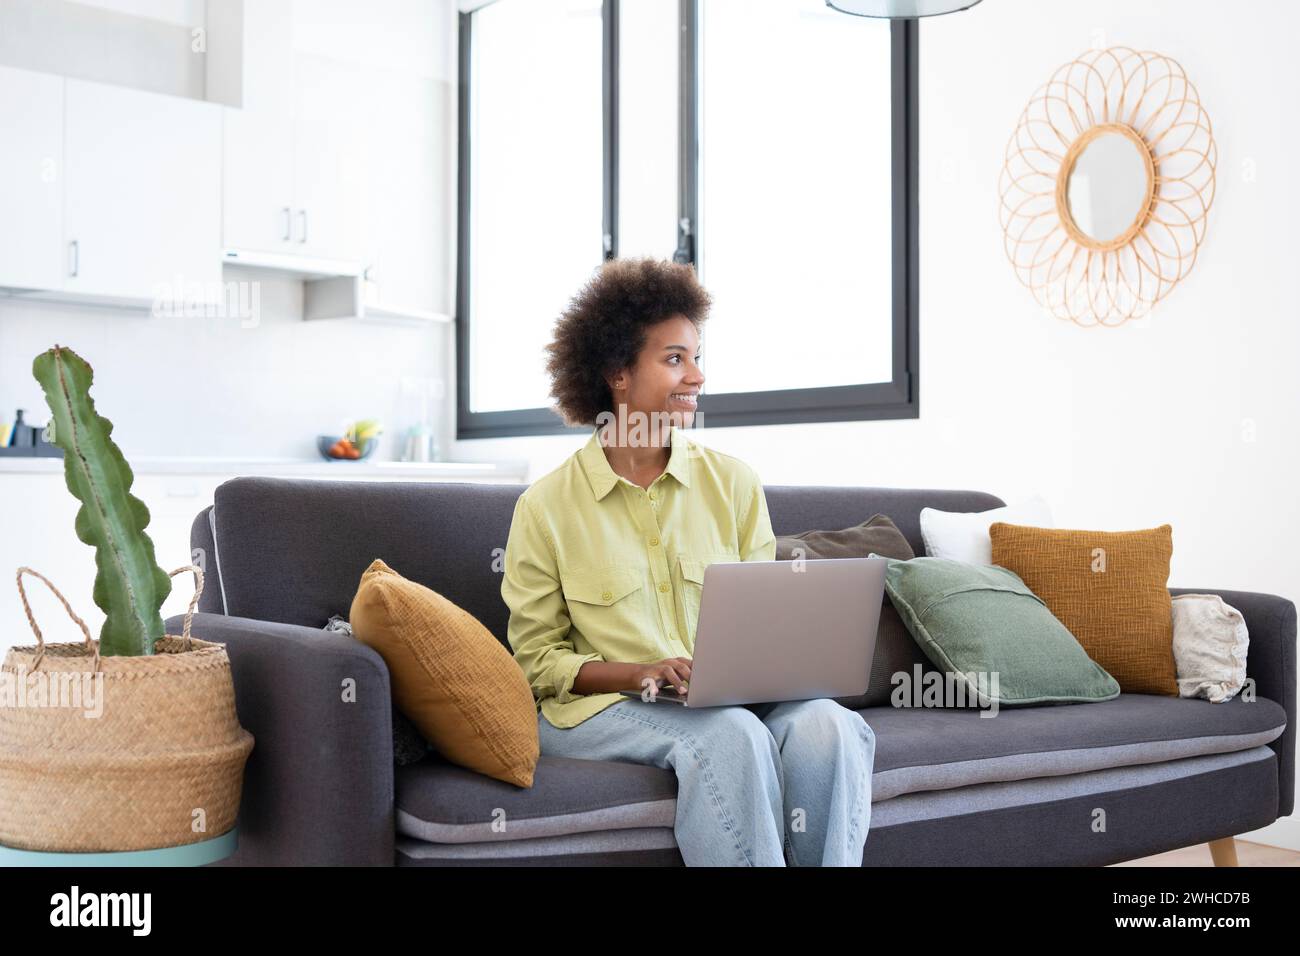 Souriant jeune femme noire à l'aide d'un ordinateur portable, reposant sur un canapé confortable, parler sur un appel vidéo, discuter en ligne, naviguer sur Internet, regarder un film, faire des achats sur Internet. Utilisateur de gadget numérique paresseux Banque D'Images